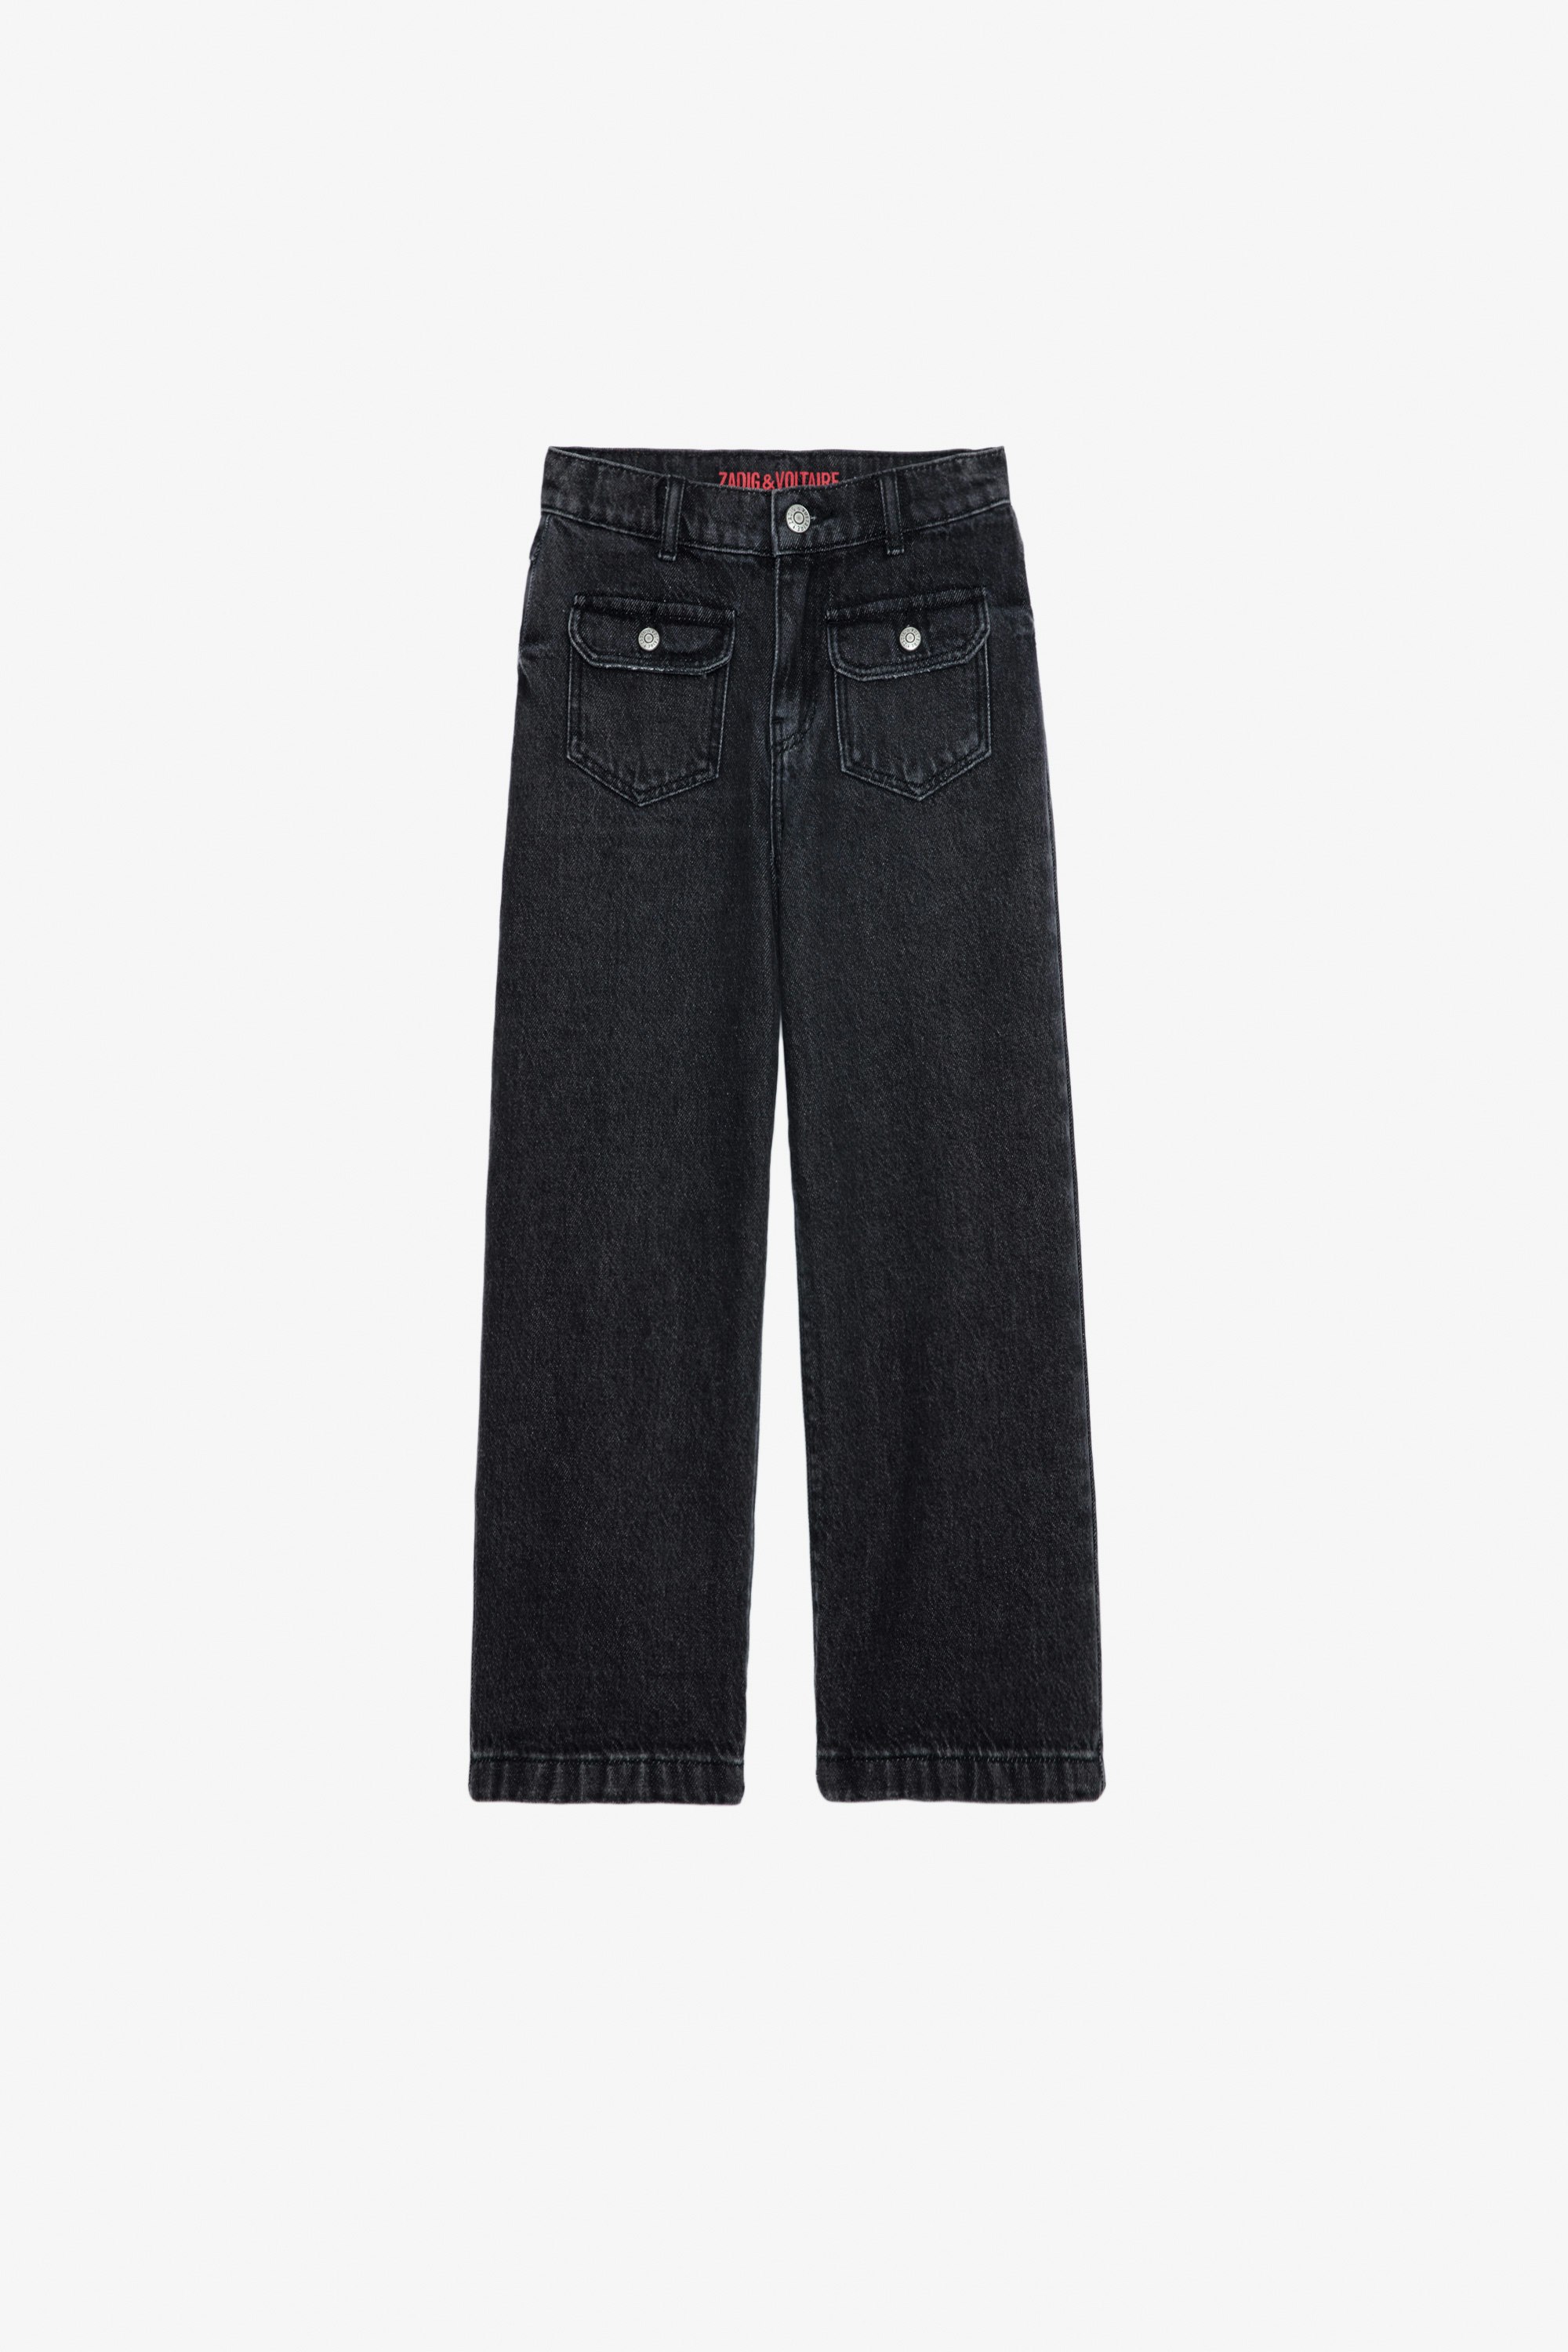 Hippie Girls’ Jeans Girls’ black flared denim jeans.